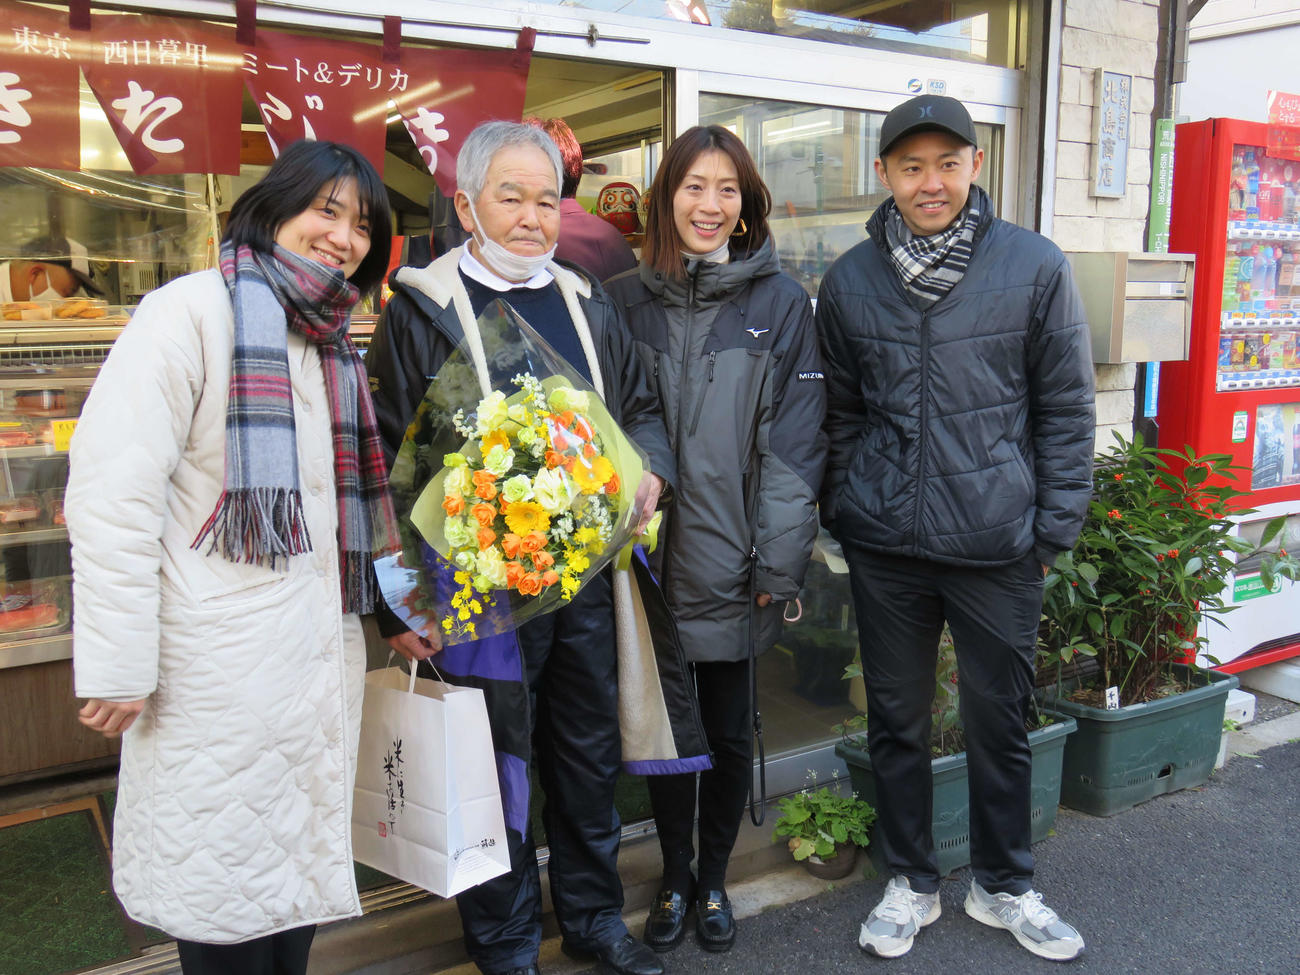 北島康介さん（右端）の実家の精肉店で北島さんの父・富士男さん（左から2人目）を手伝った、左から中村礼子さん、1人おいて寺川綾さん（撮影・田口潤）